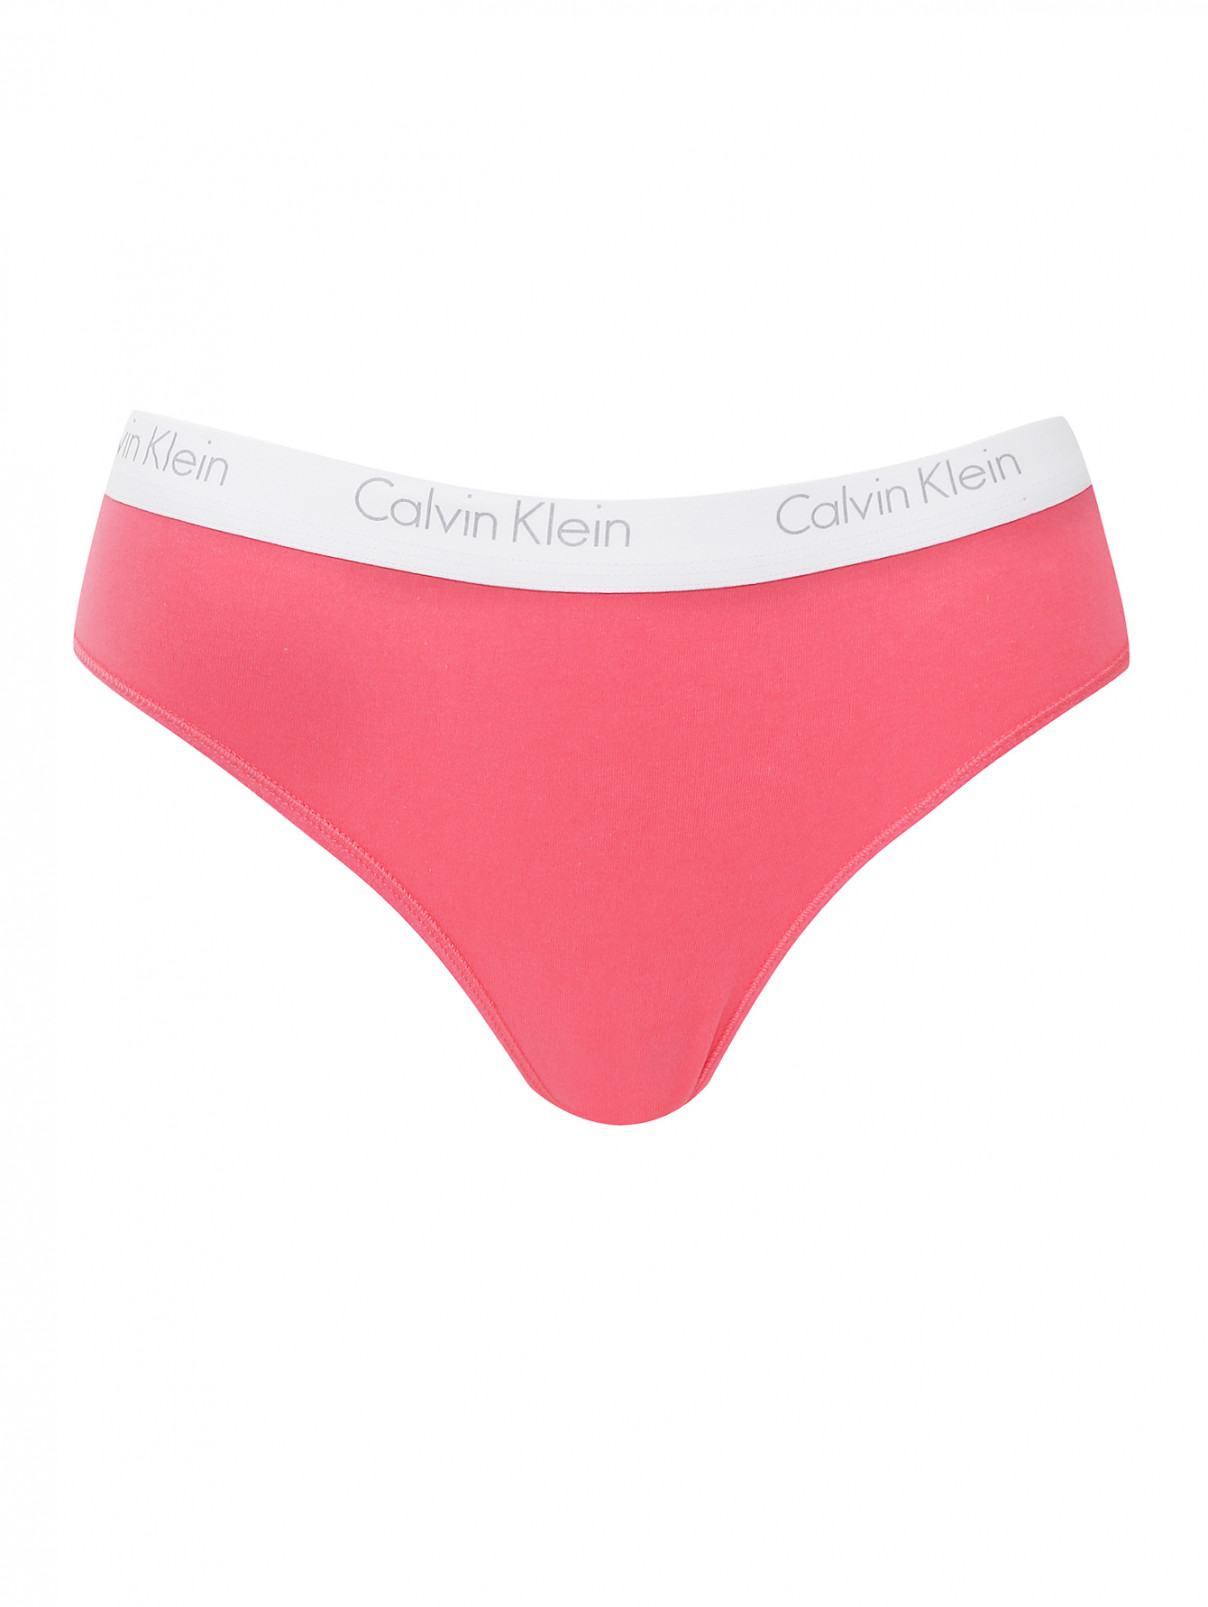 Трусы из хлопка Calvin Klein  –  Общий вид  – Цвет:  Розовый